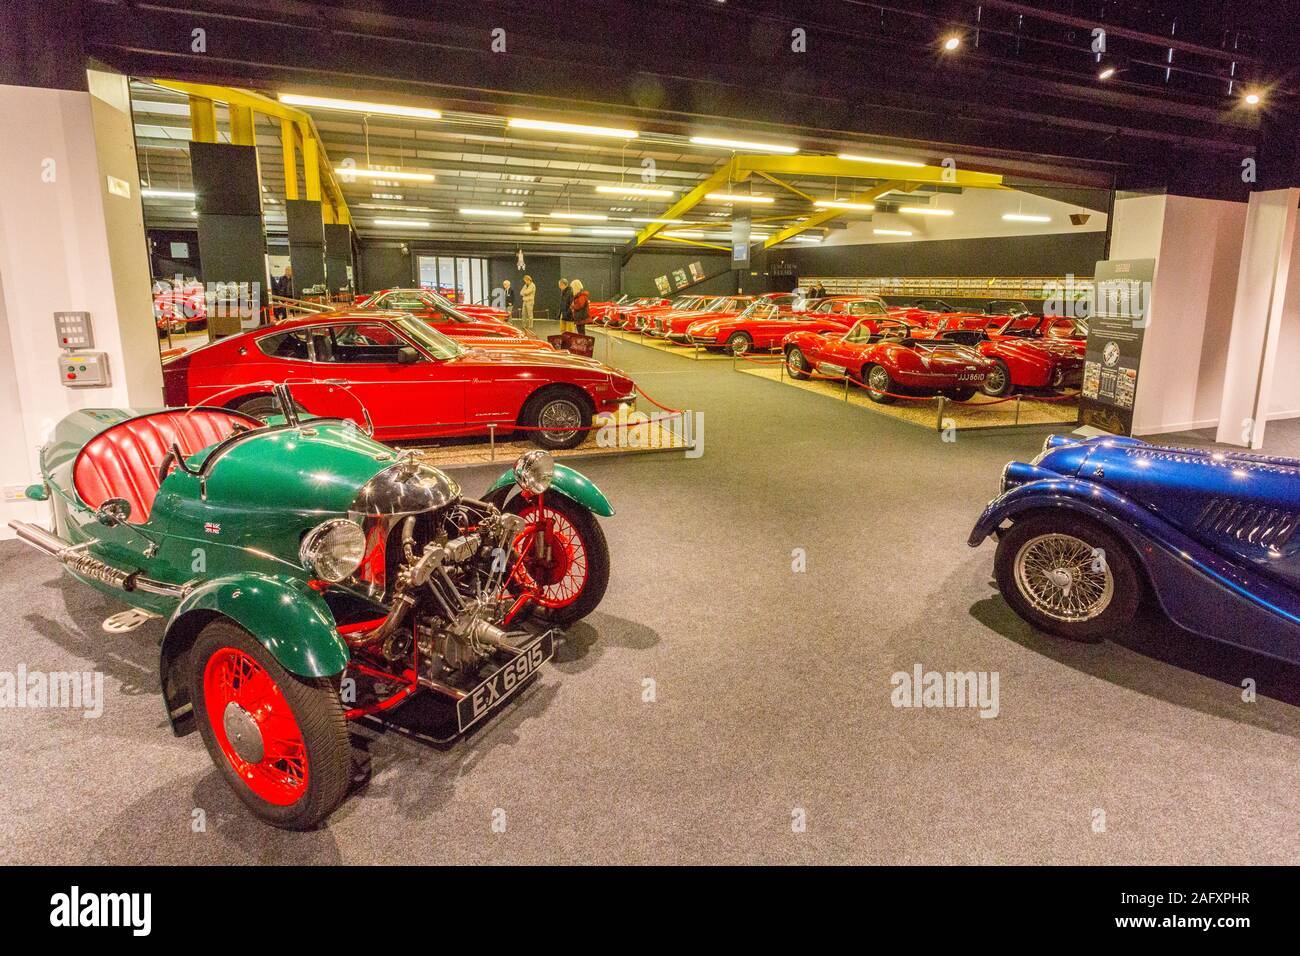 La salle rouge contient une sélection unique de voitures de sport rouge à la Haynes International Motor Museum, Sparkford, Somerset, UK Banque D'Images